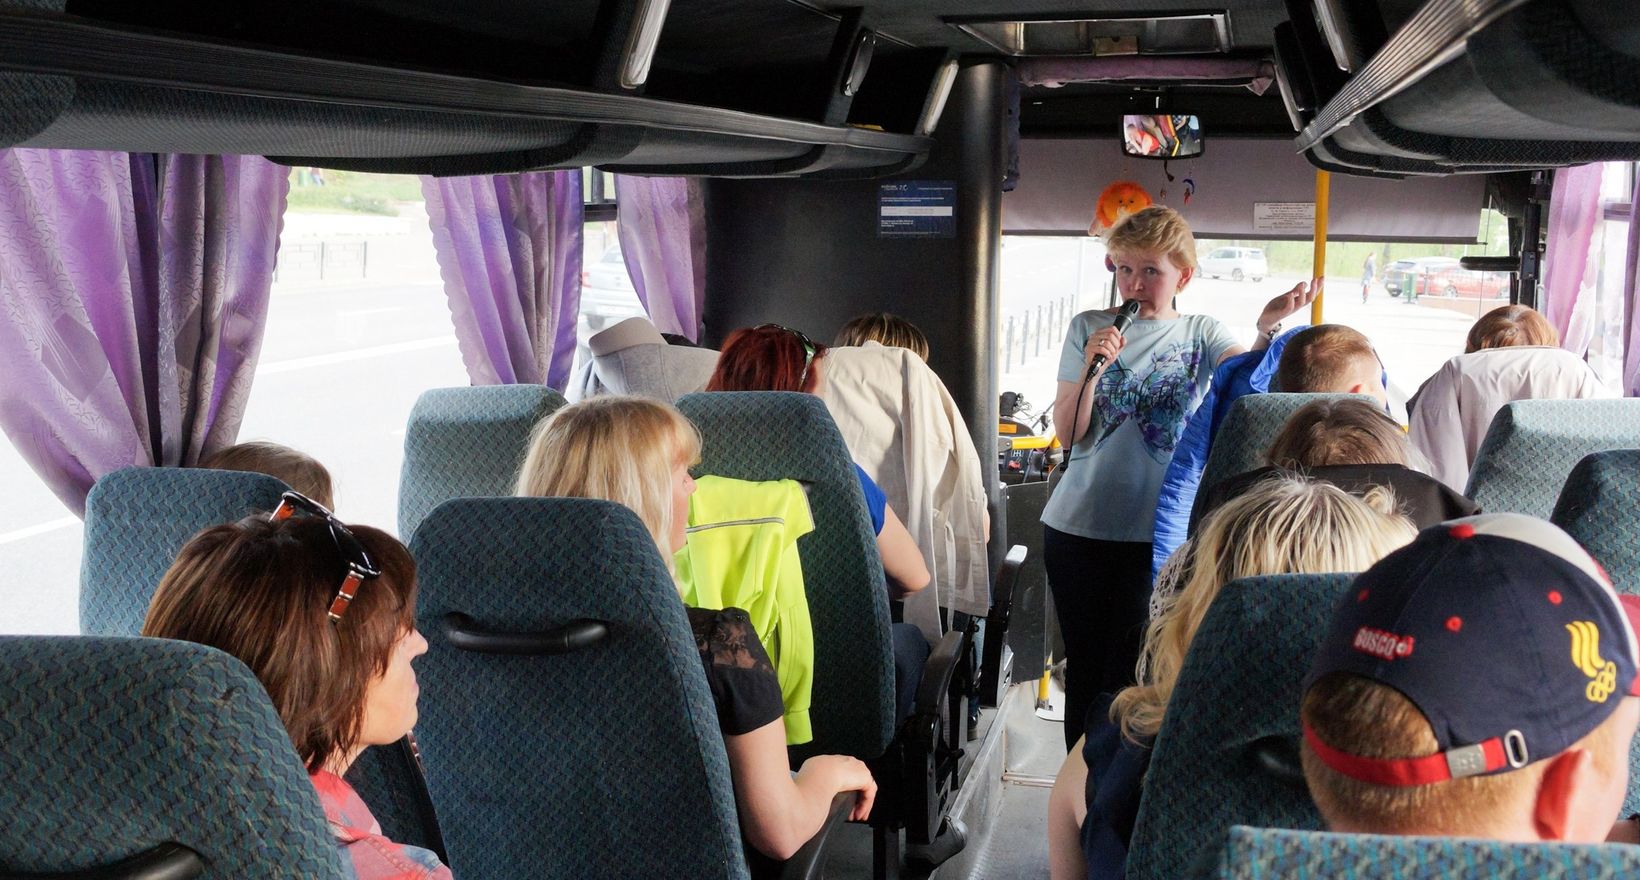 Автобусная экскурсия «Ижевск - столица Удмуртии»